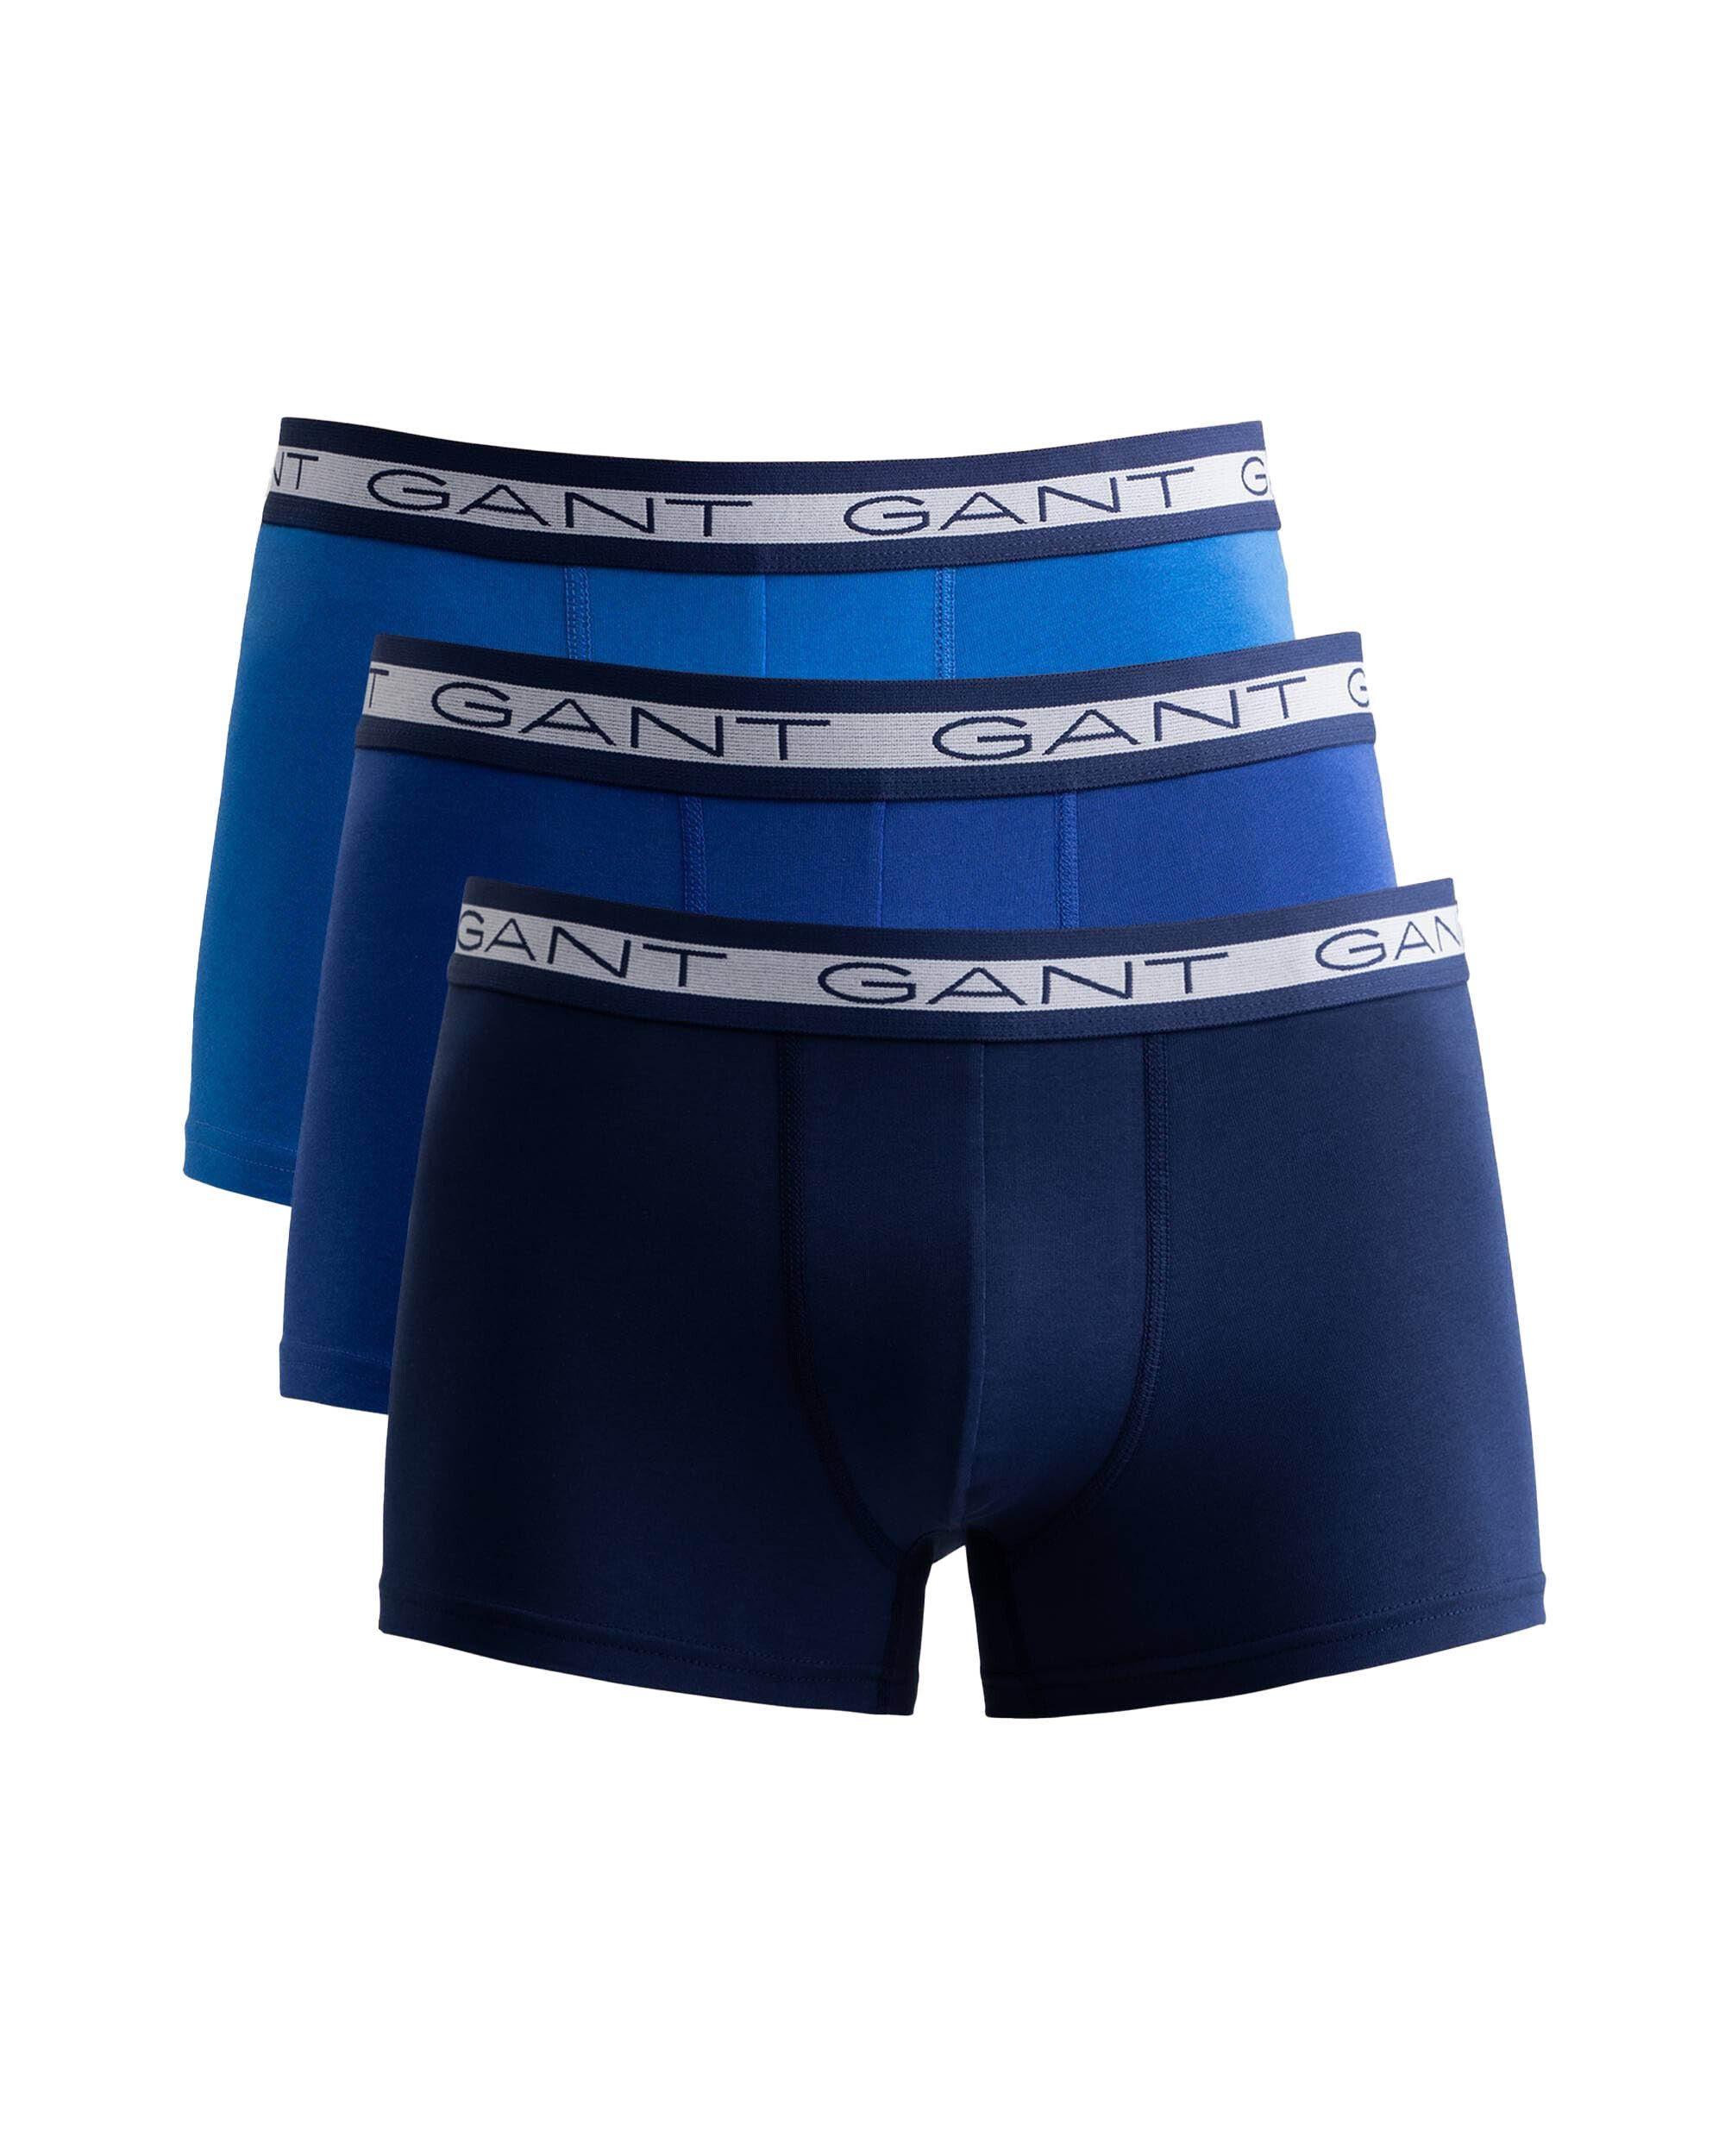 Trunks, Boxer Shorts, Gant Cotton Boxer Blau Herren - Pack 3er